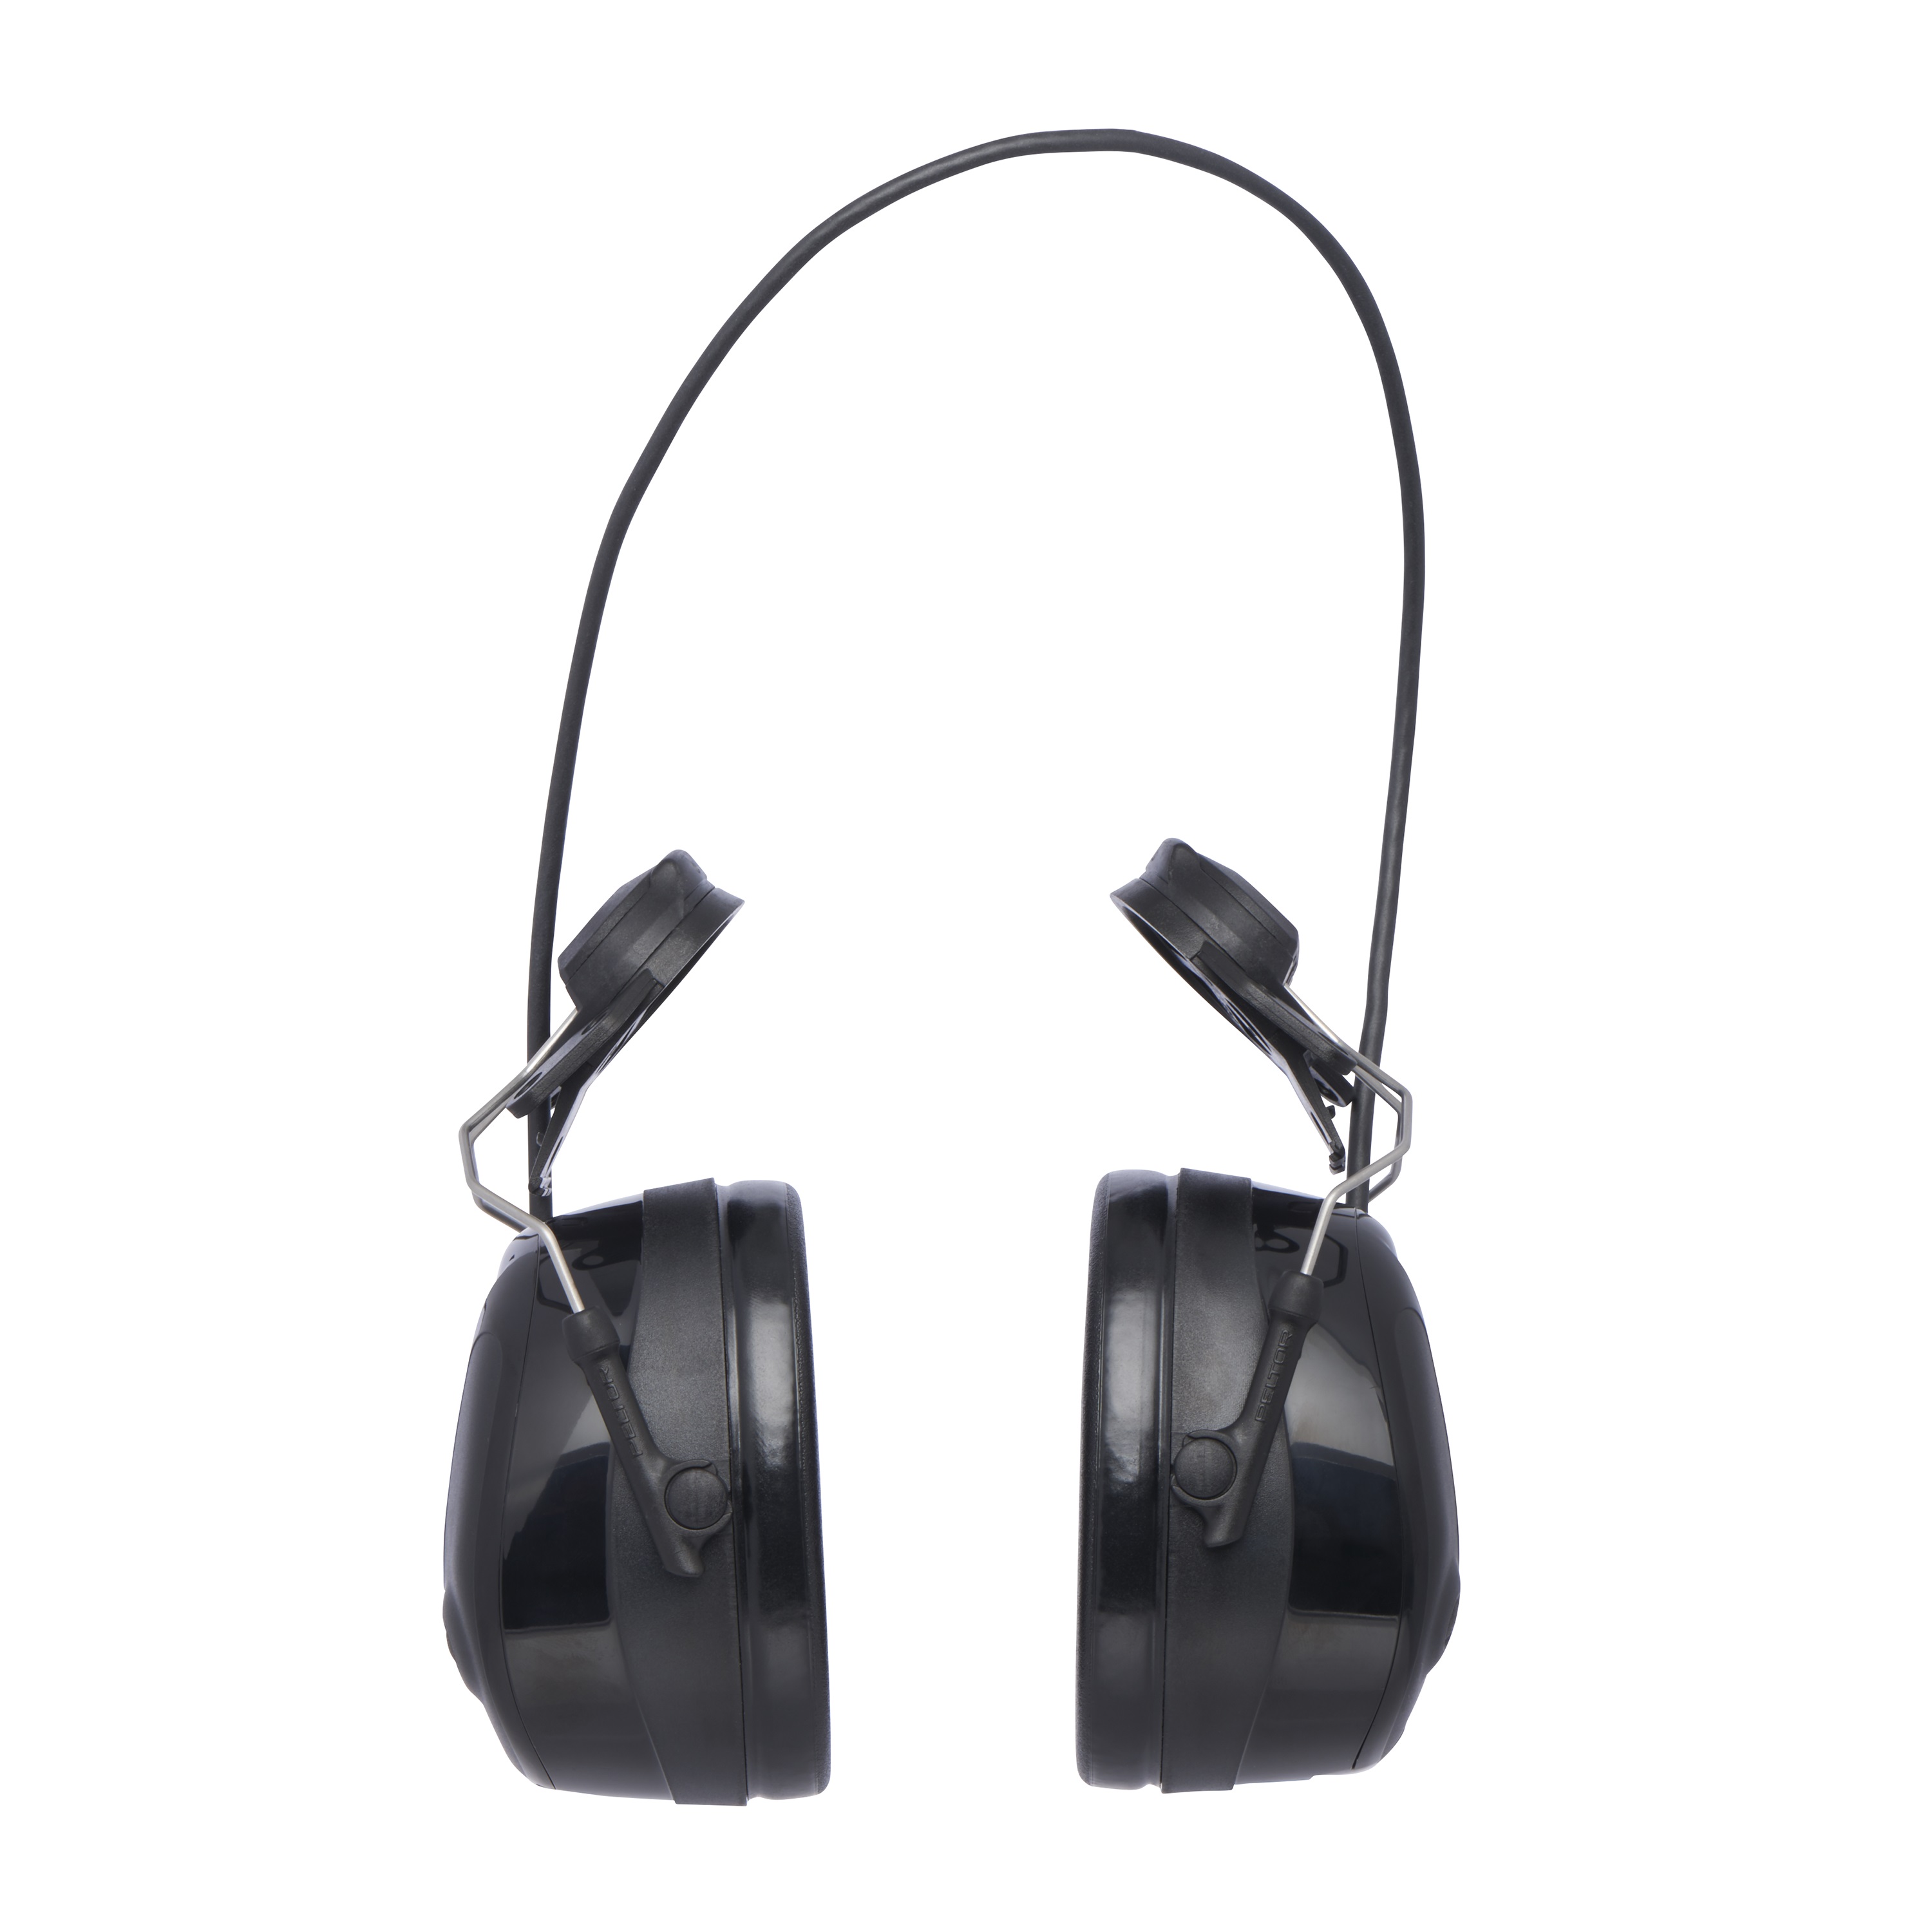 3M™ PELTOR™ ProTac™ III Headset, 31 dB, schwarz, Befestigung am Schutzhelm, MT13H221P3E